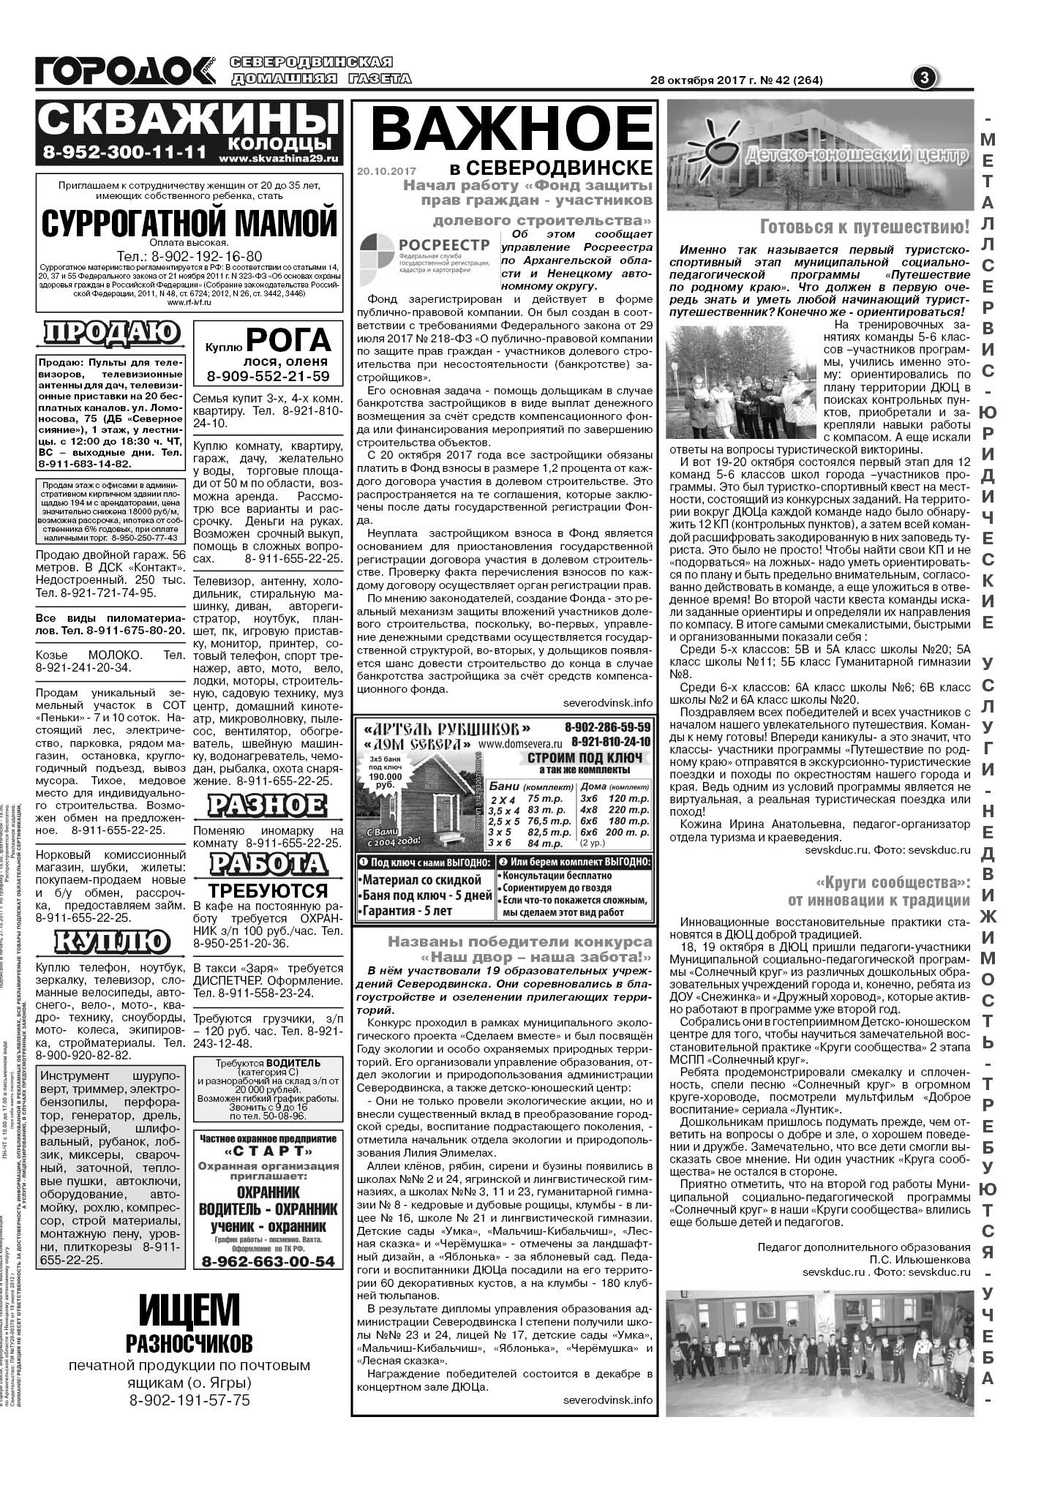 Городок плюс, выпуск номер 42 от 28 октября 2017 года, страница 3.